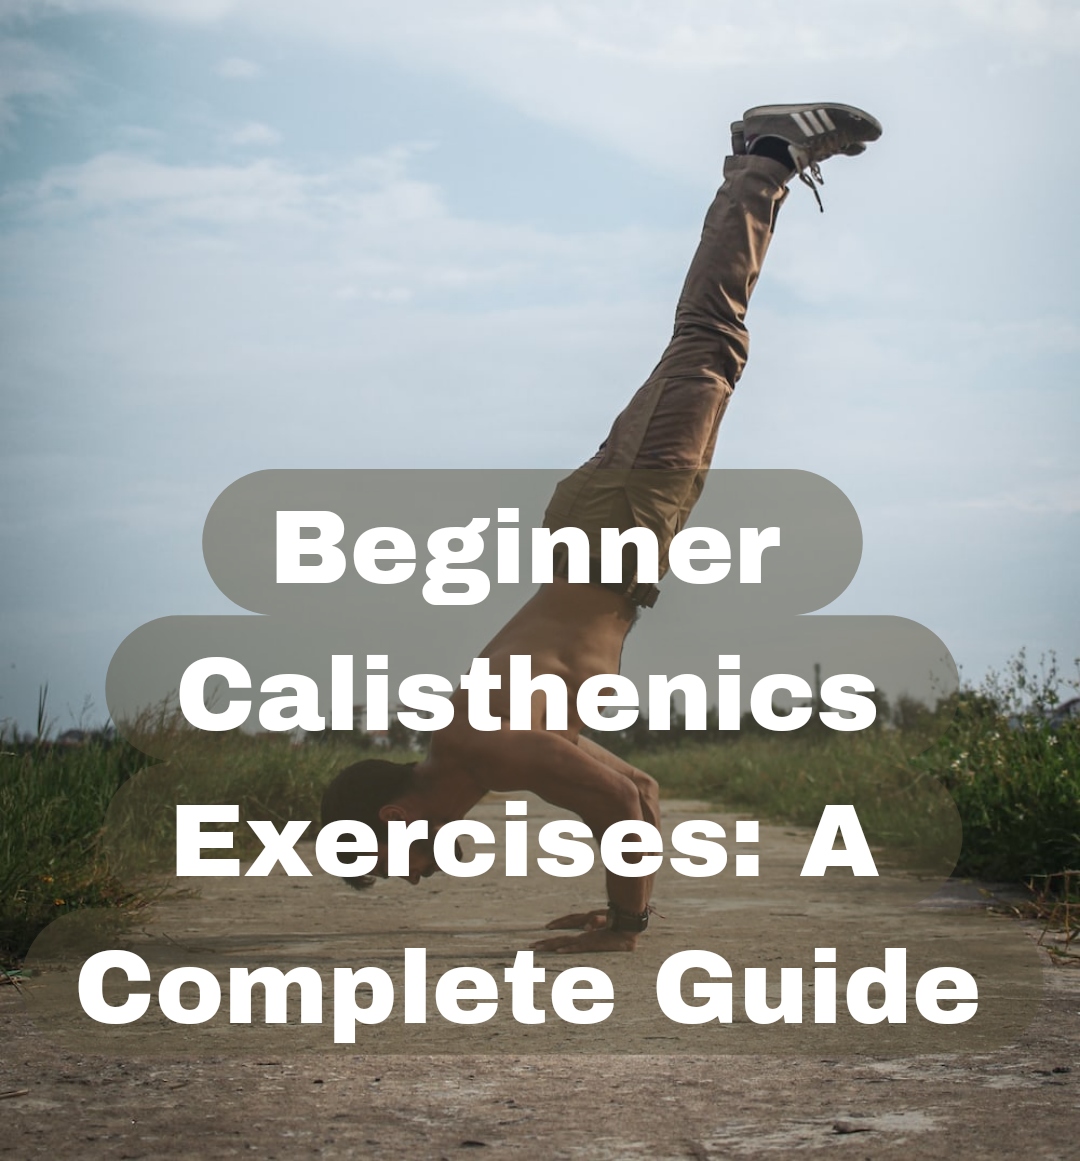 Beginner Calisthenics Exercises: A Complete Guide